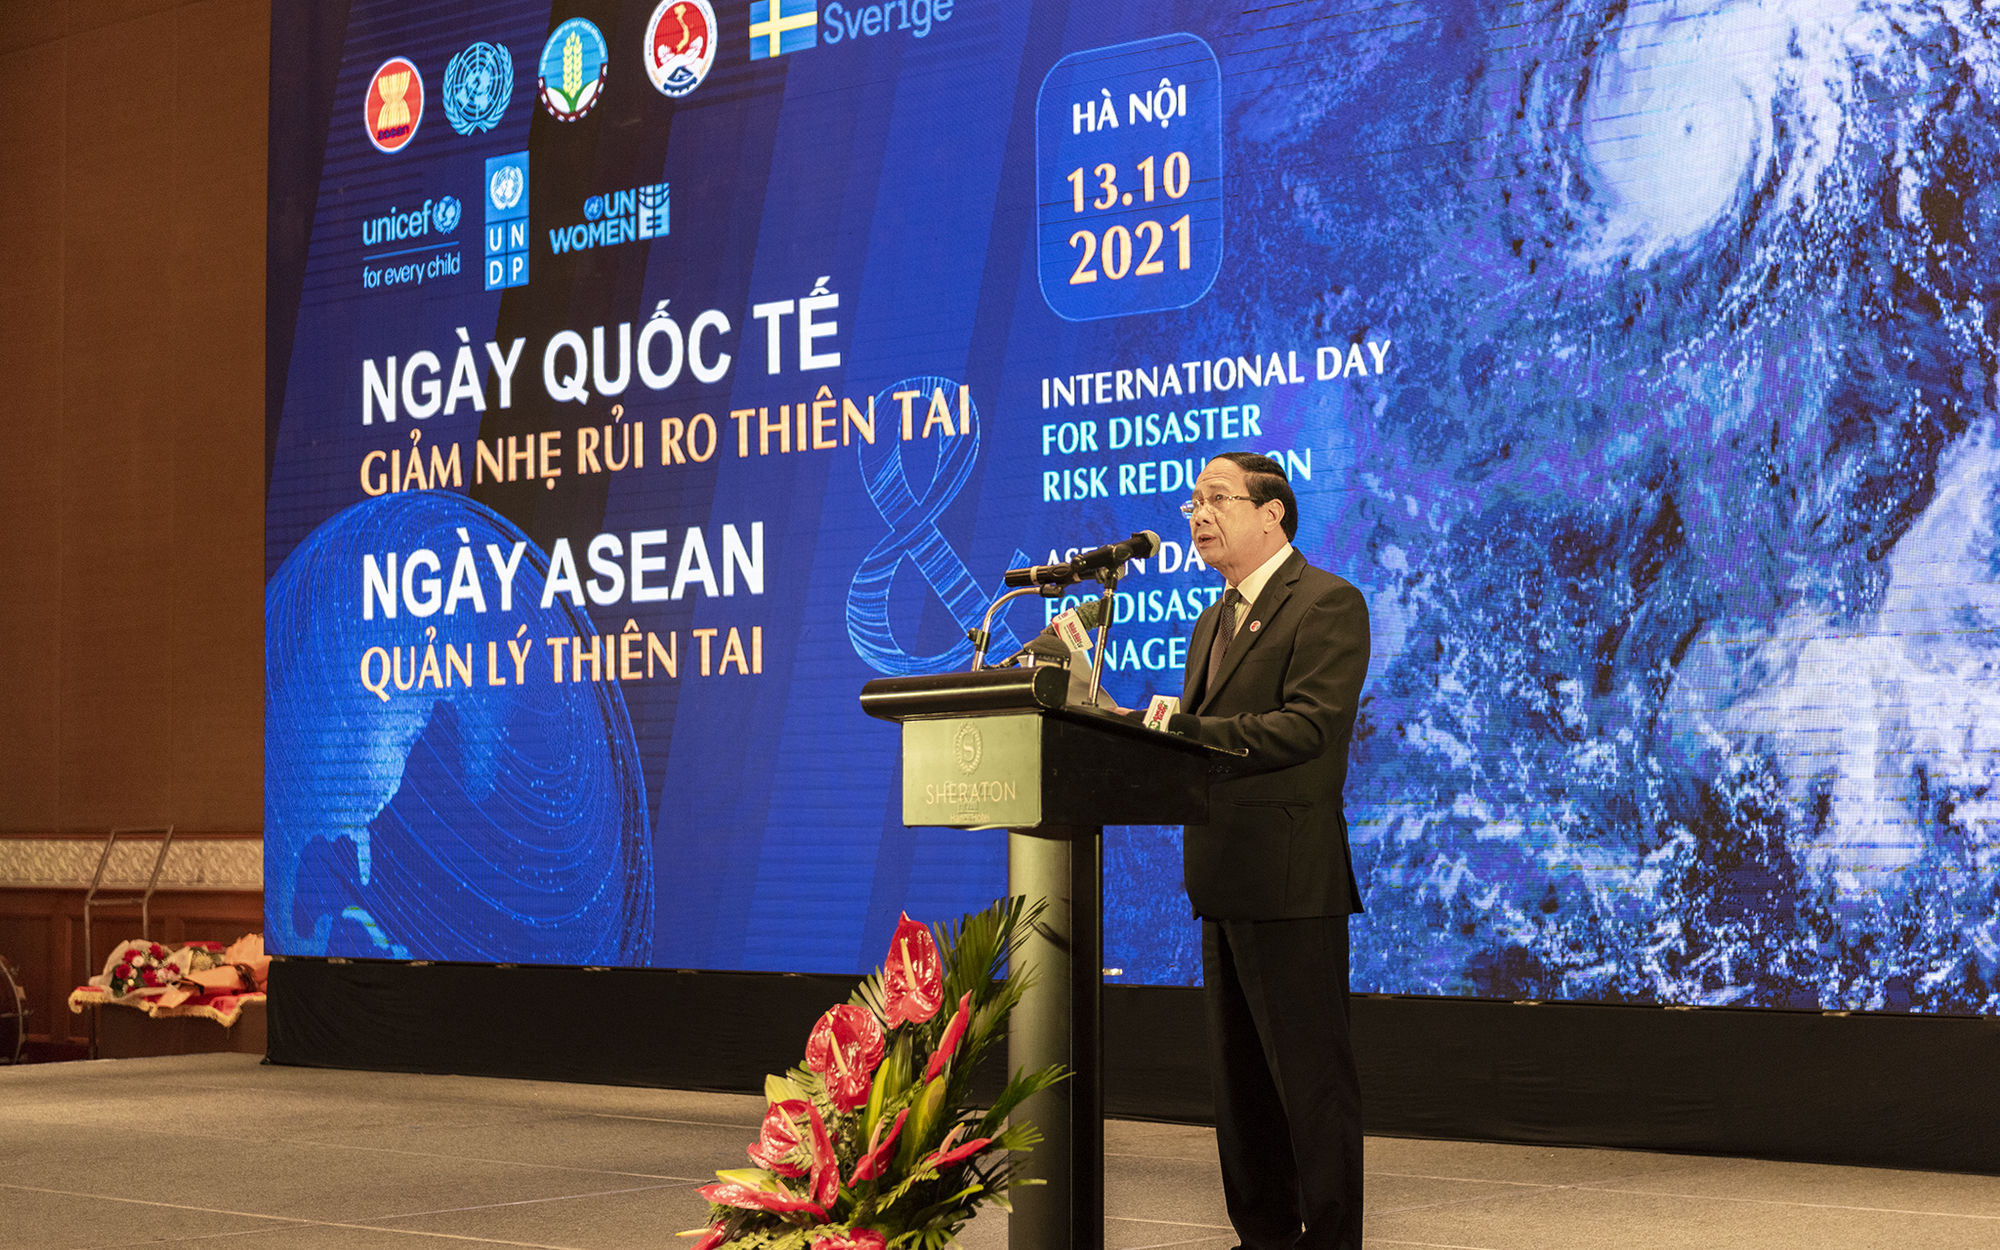 Phó Thủ tướng Lê Văn Thành: "Ứng phó hiệu quả với rủi ro khi thiên tai và dịch Covid-19 cùng xảy ra"